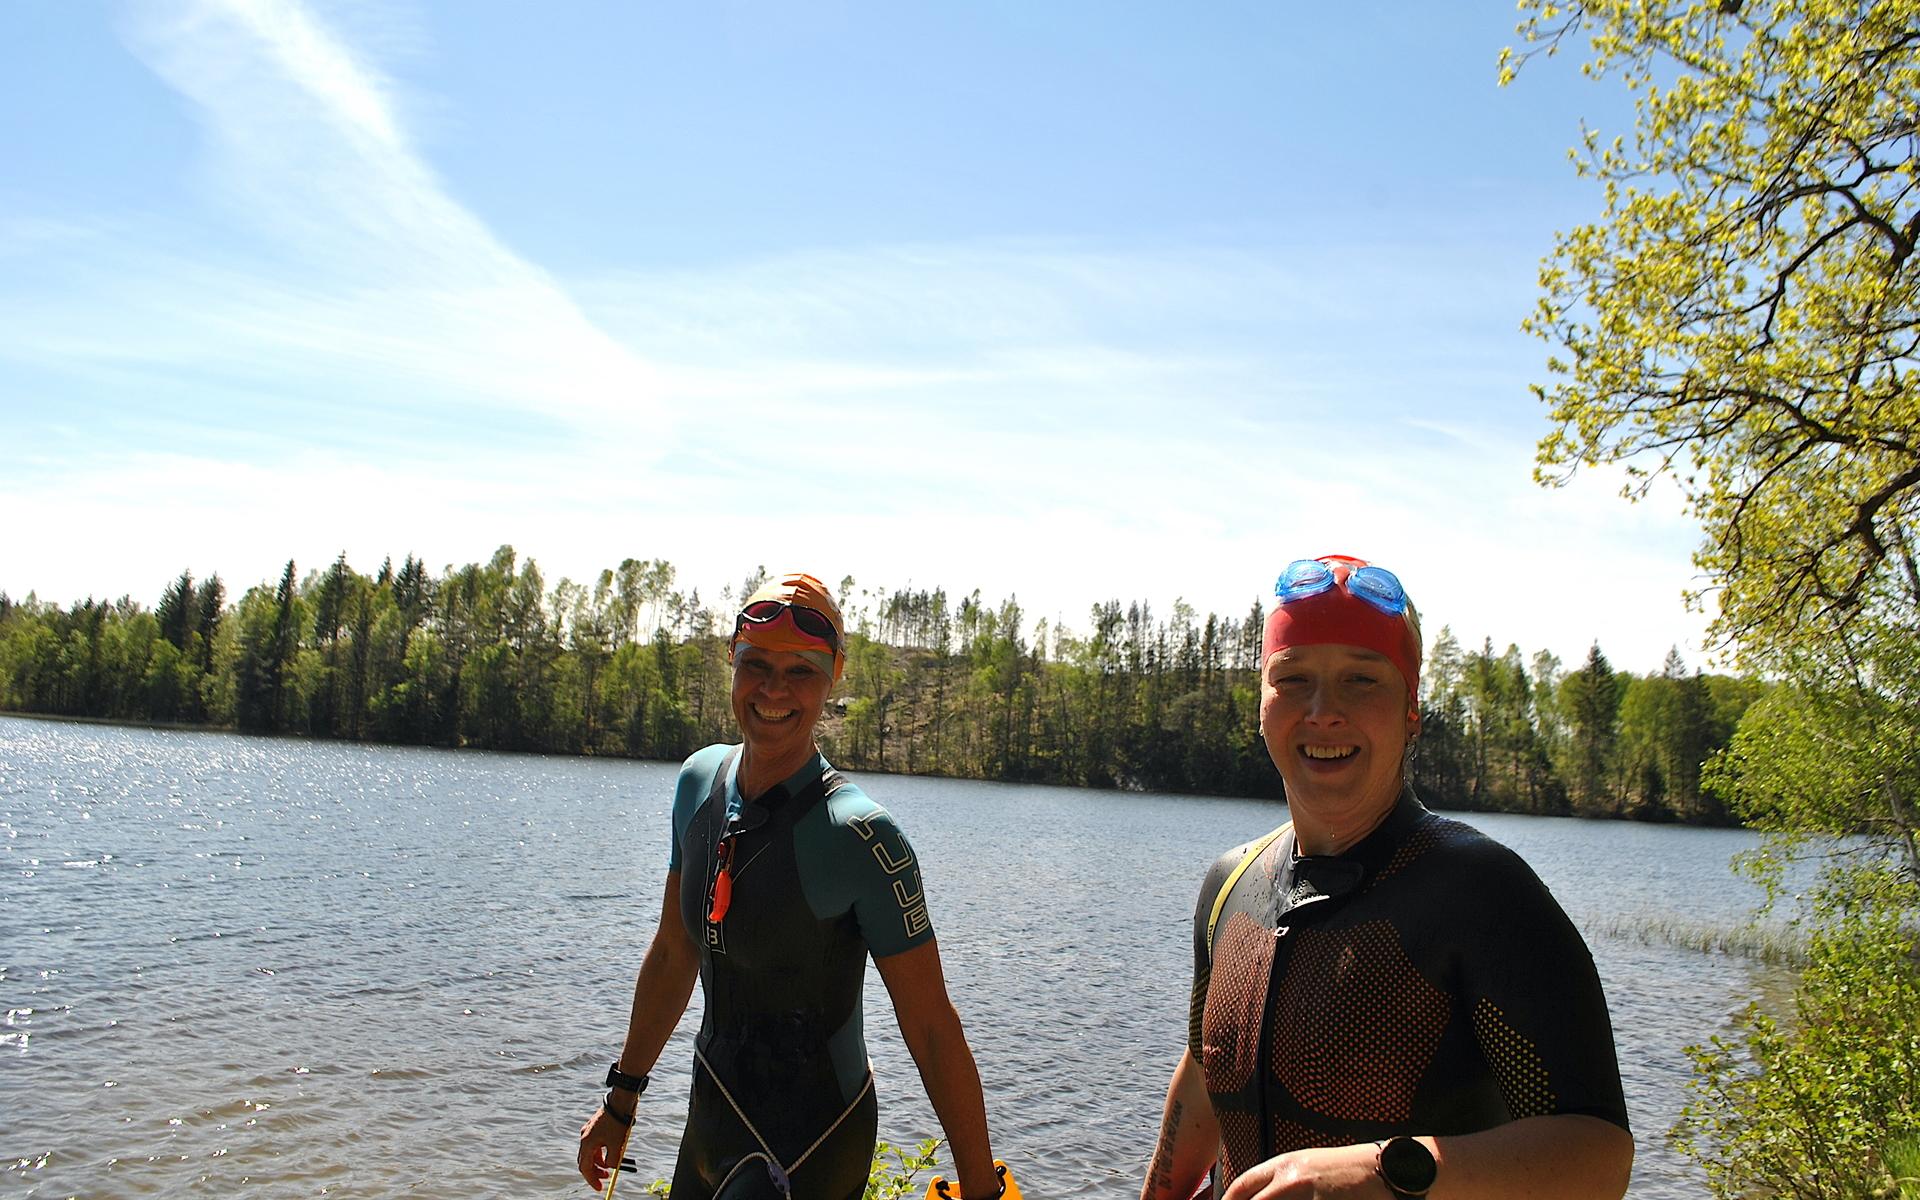 Premiärdoppen med en simtur rakt ut i Ingetorpssjön är avklarad. Femton grader är ingenting för Annika Svanberg och Emma Söderlind som snabbt gick i igen.